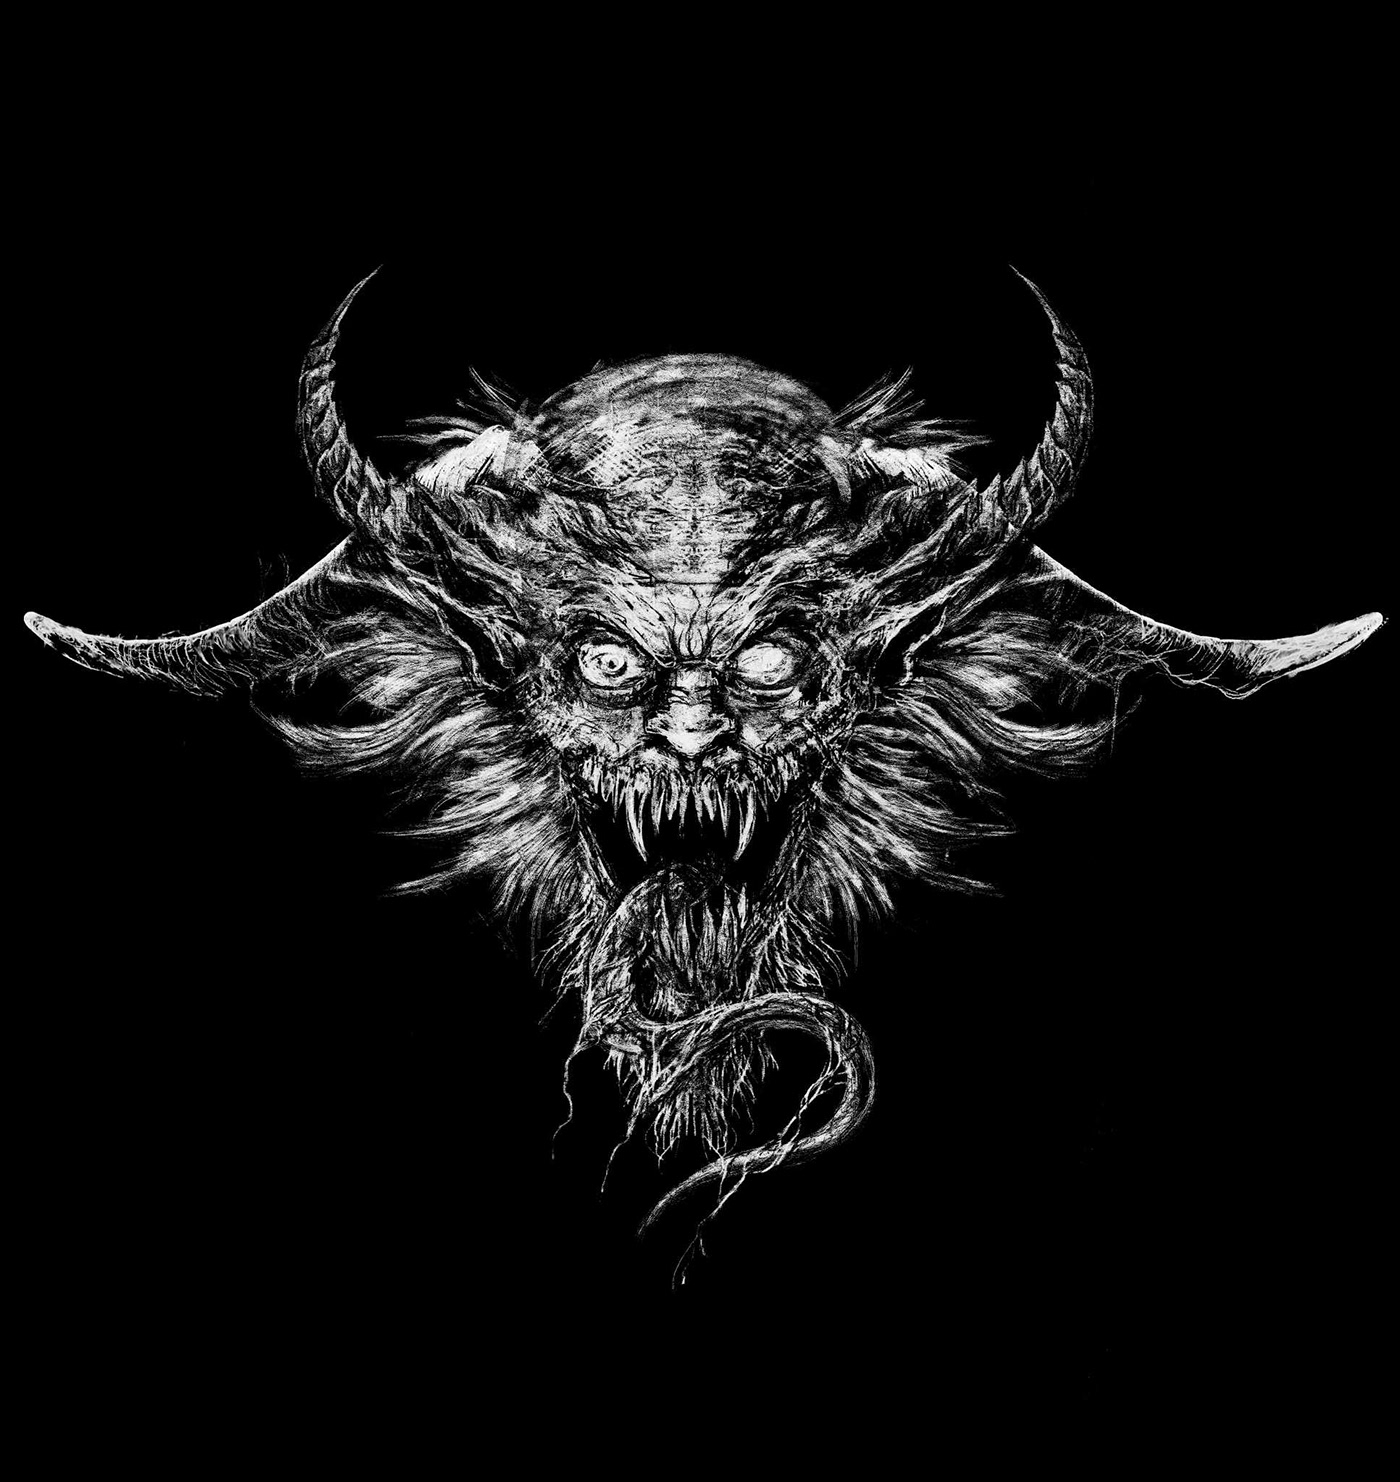 Cover Art death metal dark art black and white demon devil Deicide Nestor Avalos Art Horror Art creepy